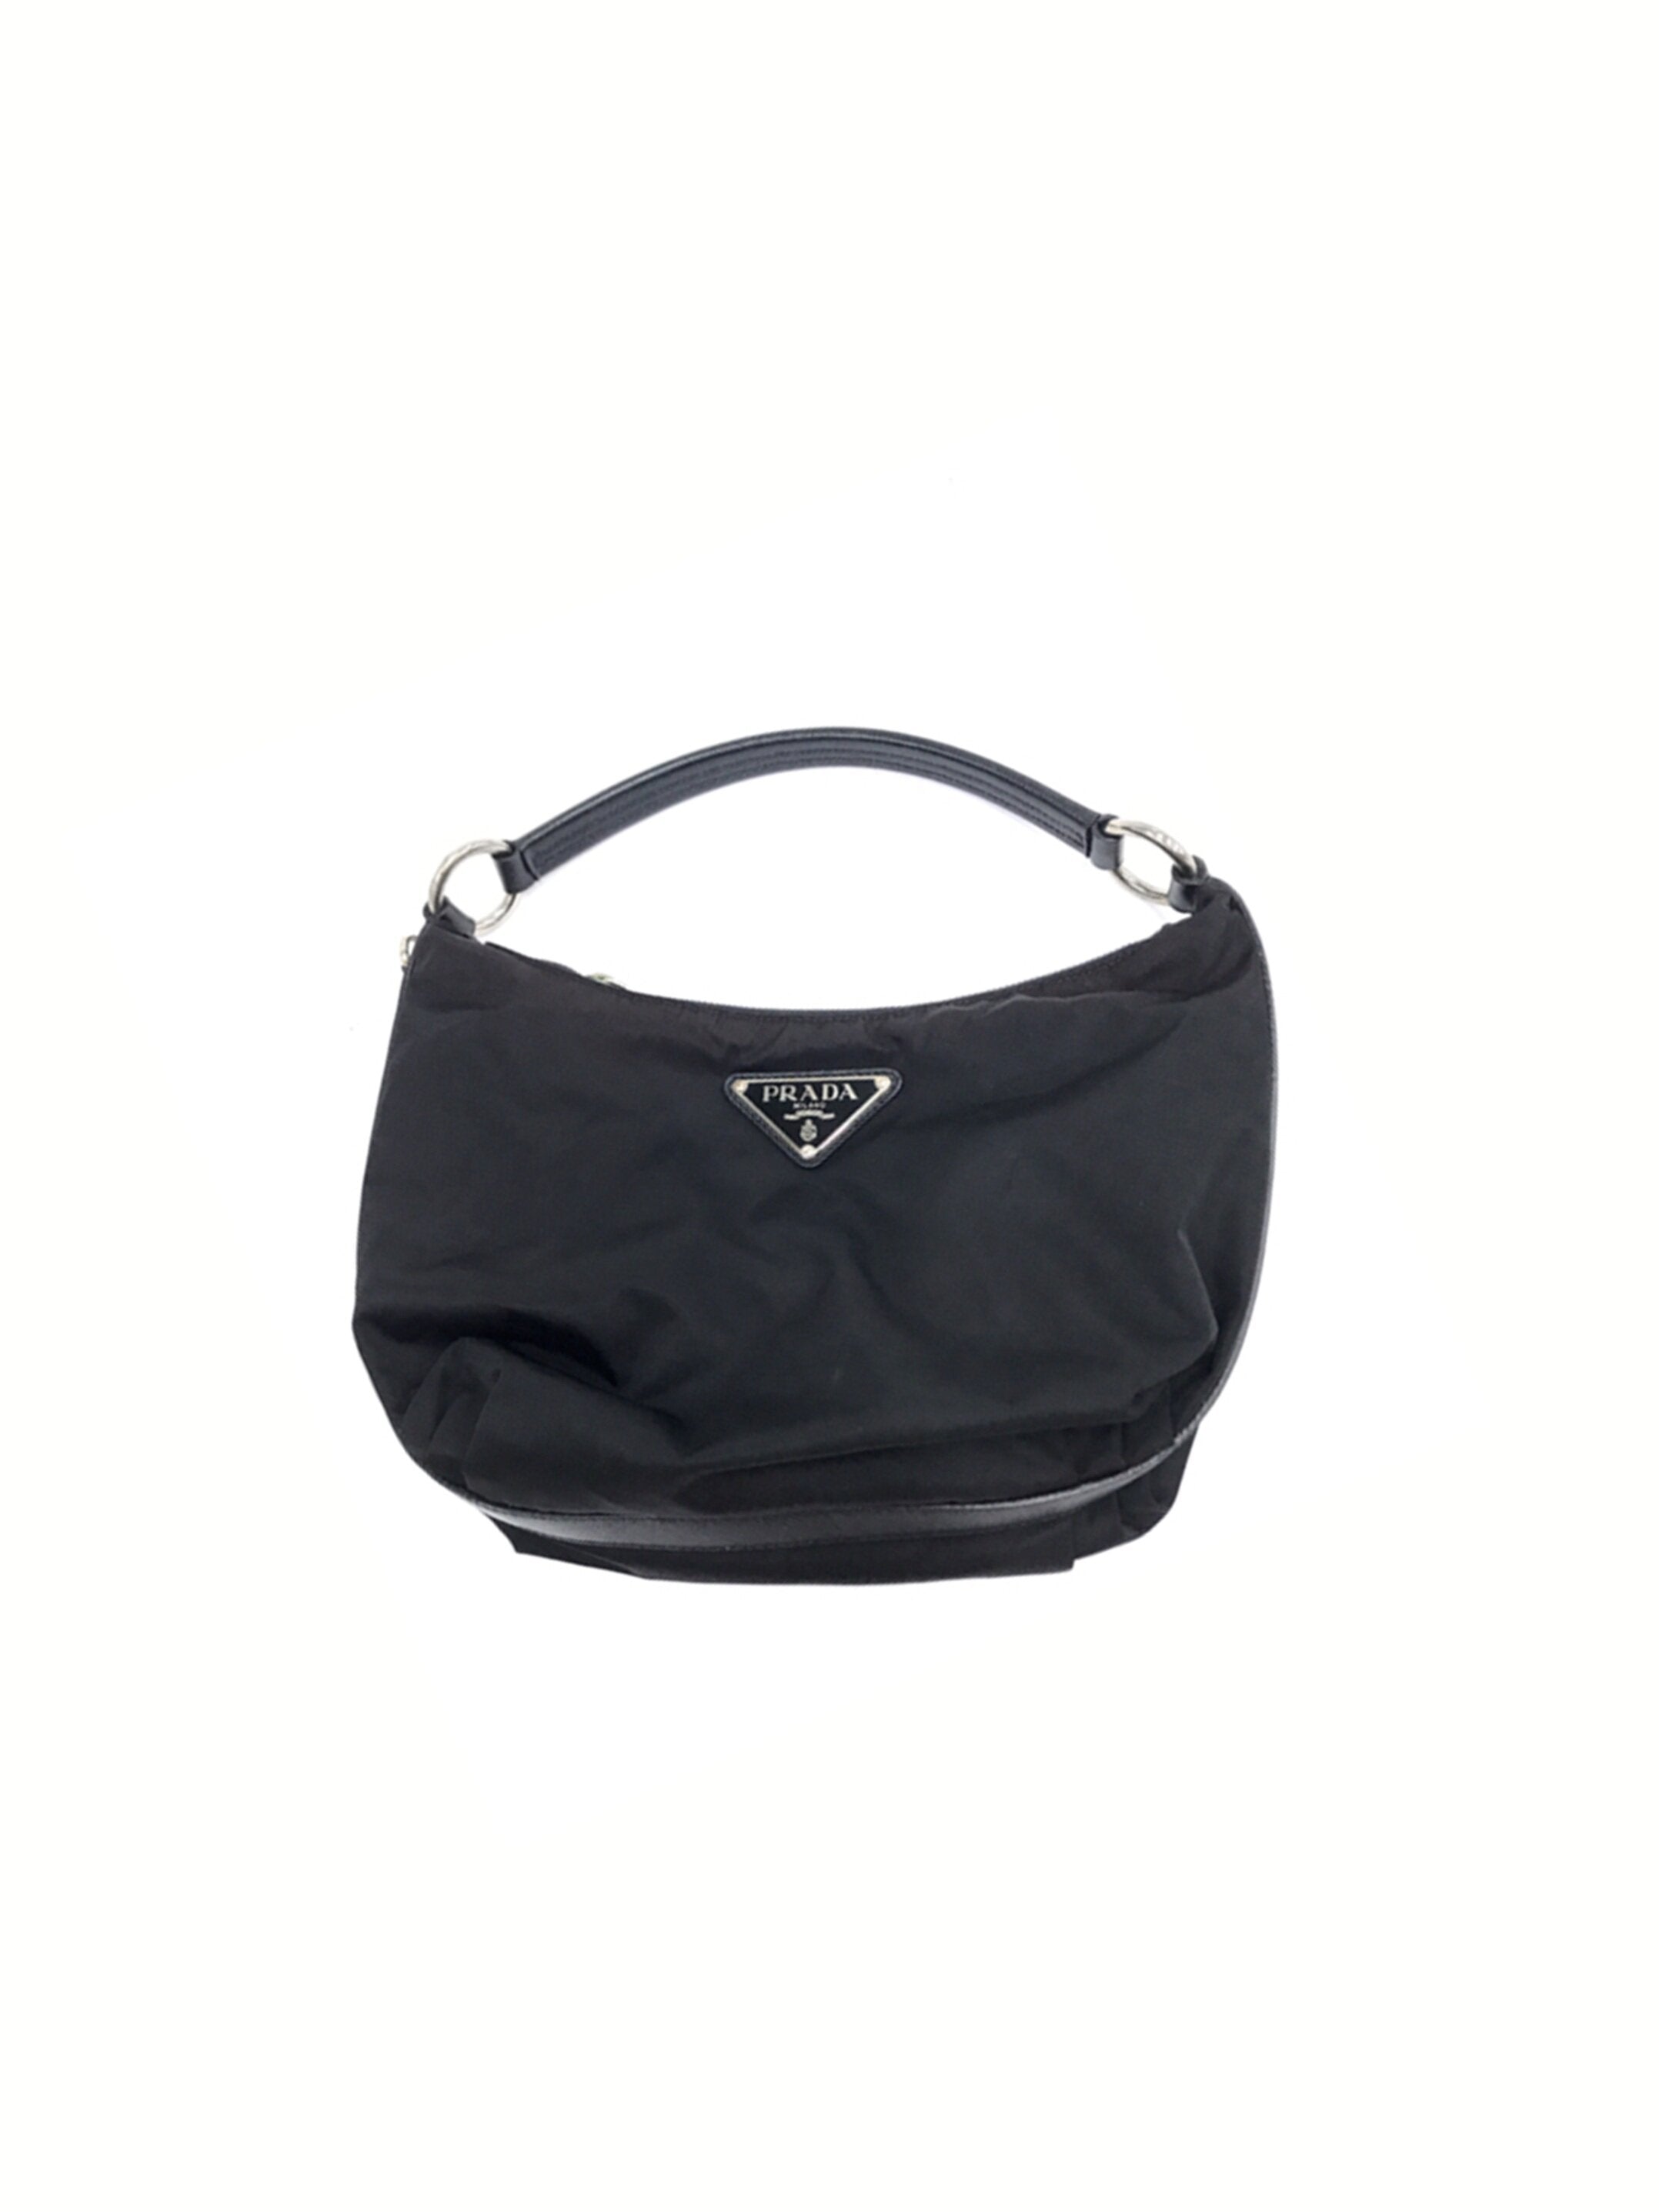 Prada 2000s Black Nylon Mini Handbag